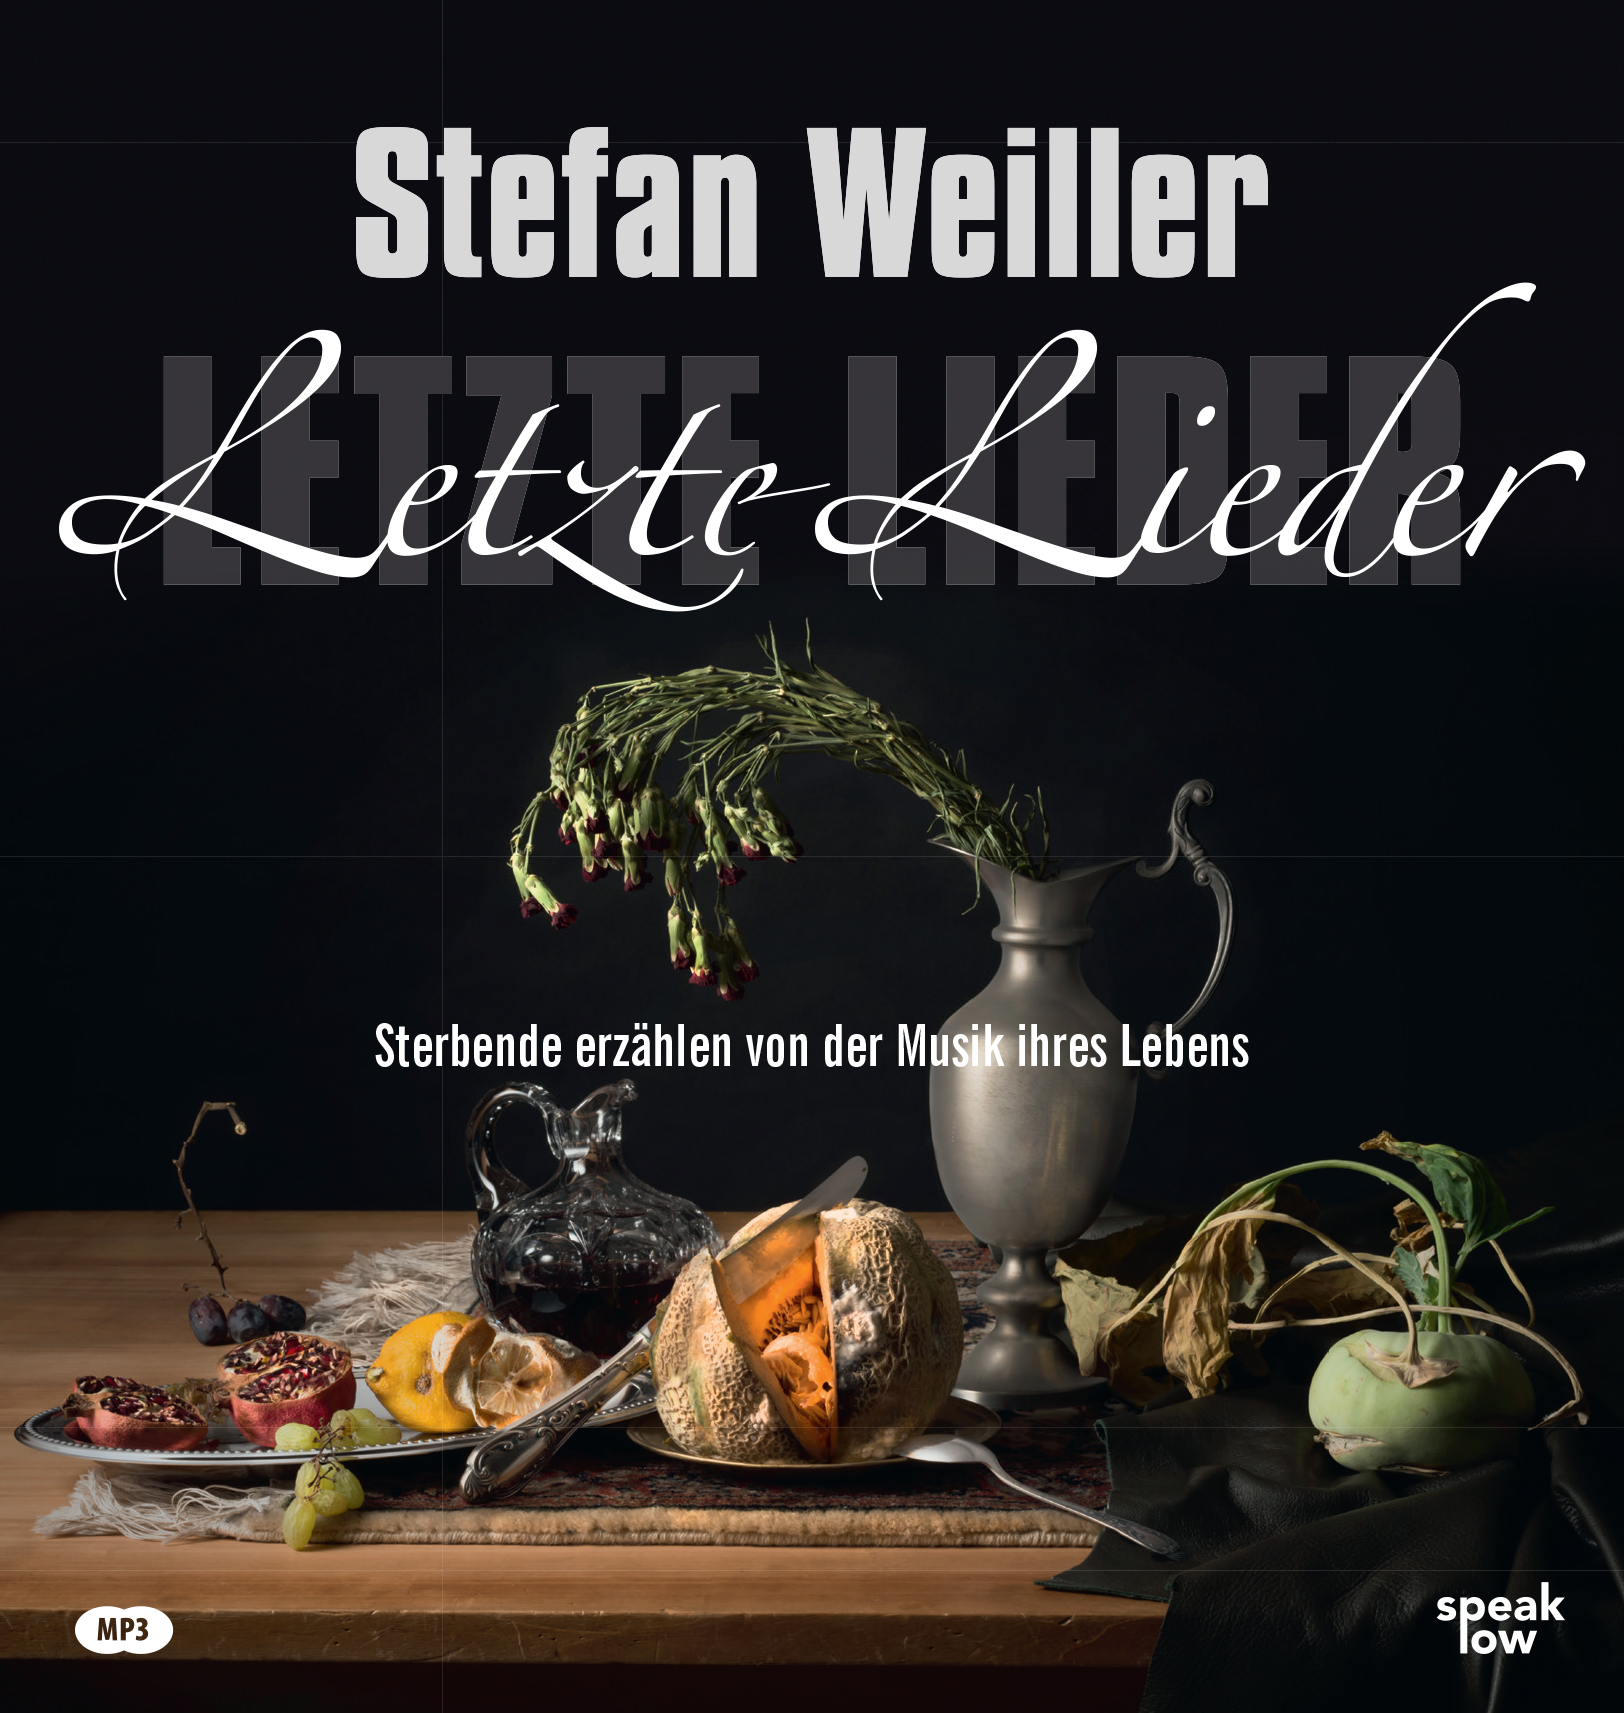 Hörbuch 'Letzte Lieder' von Stefan Weiller